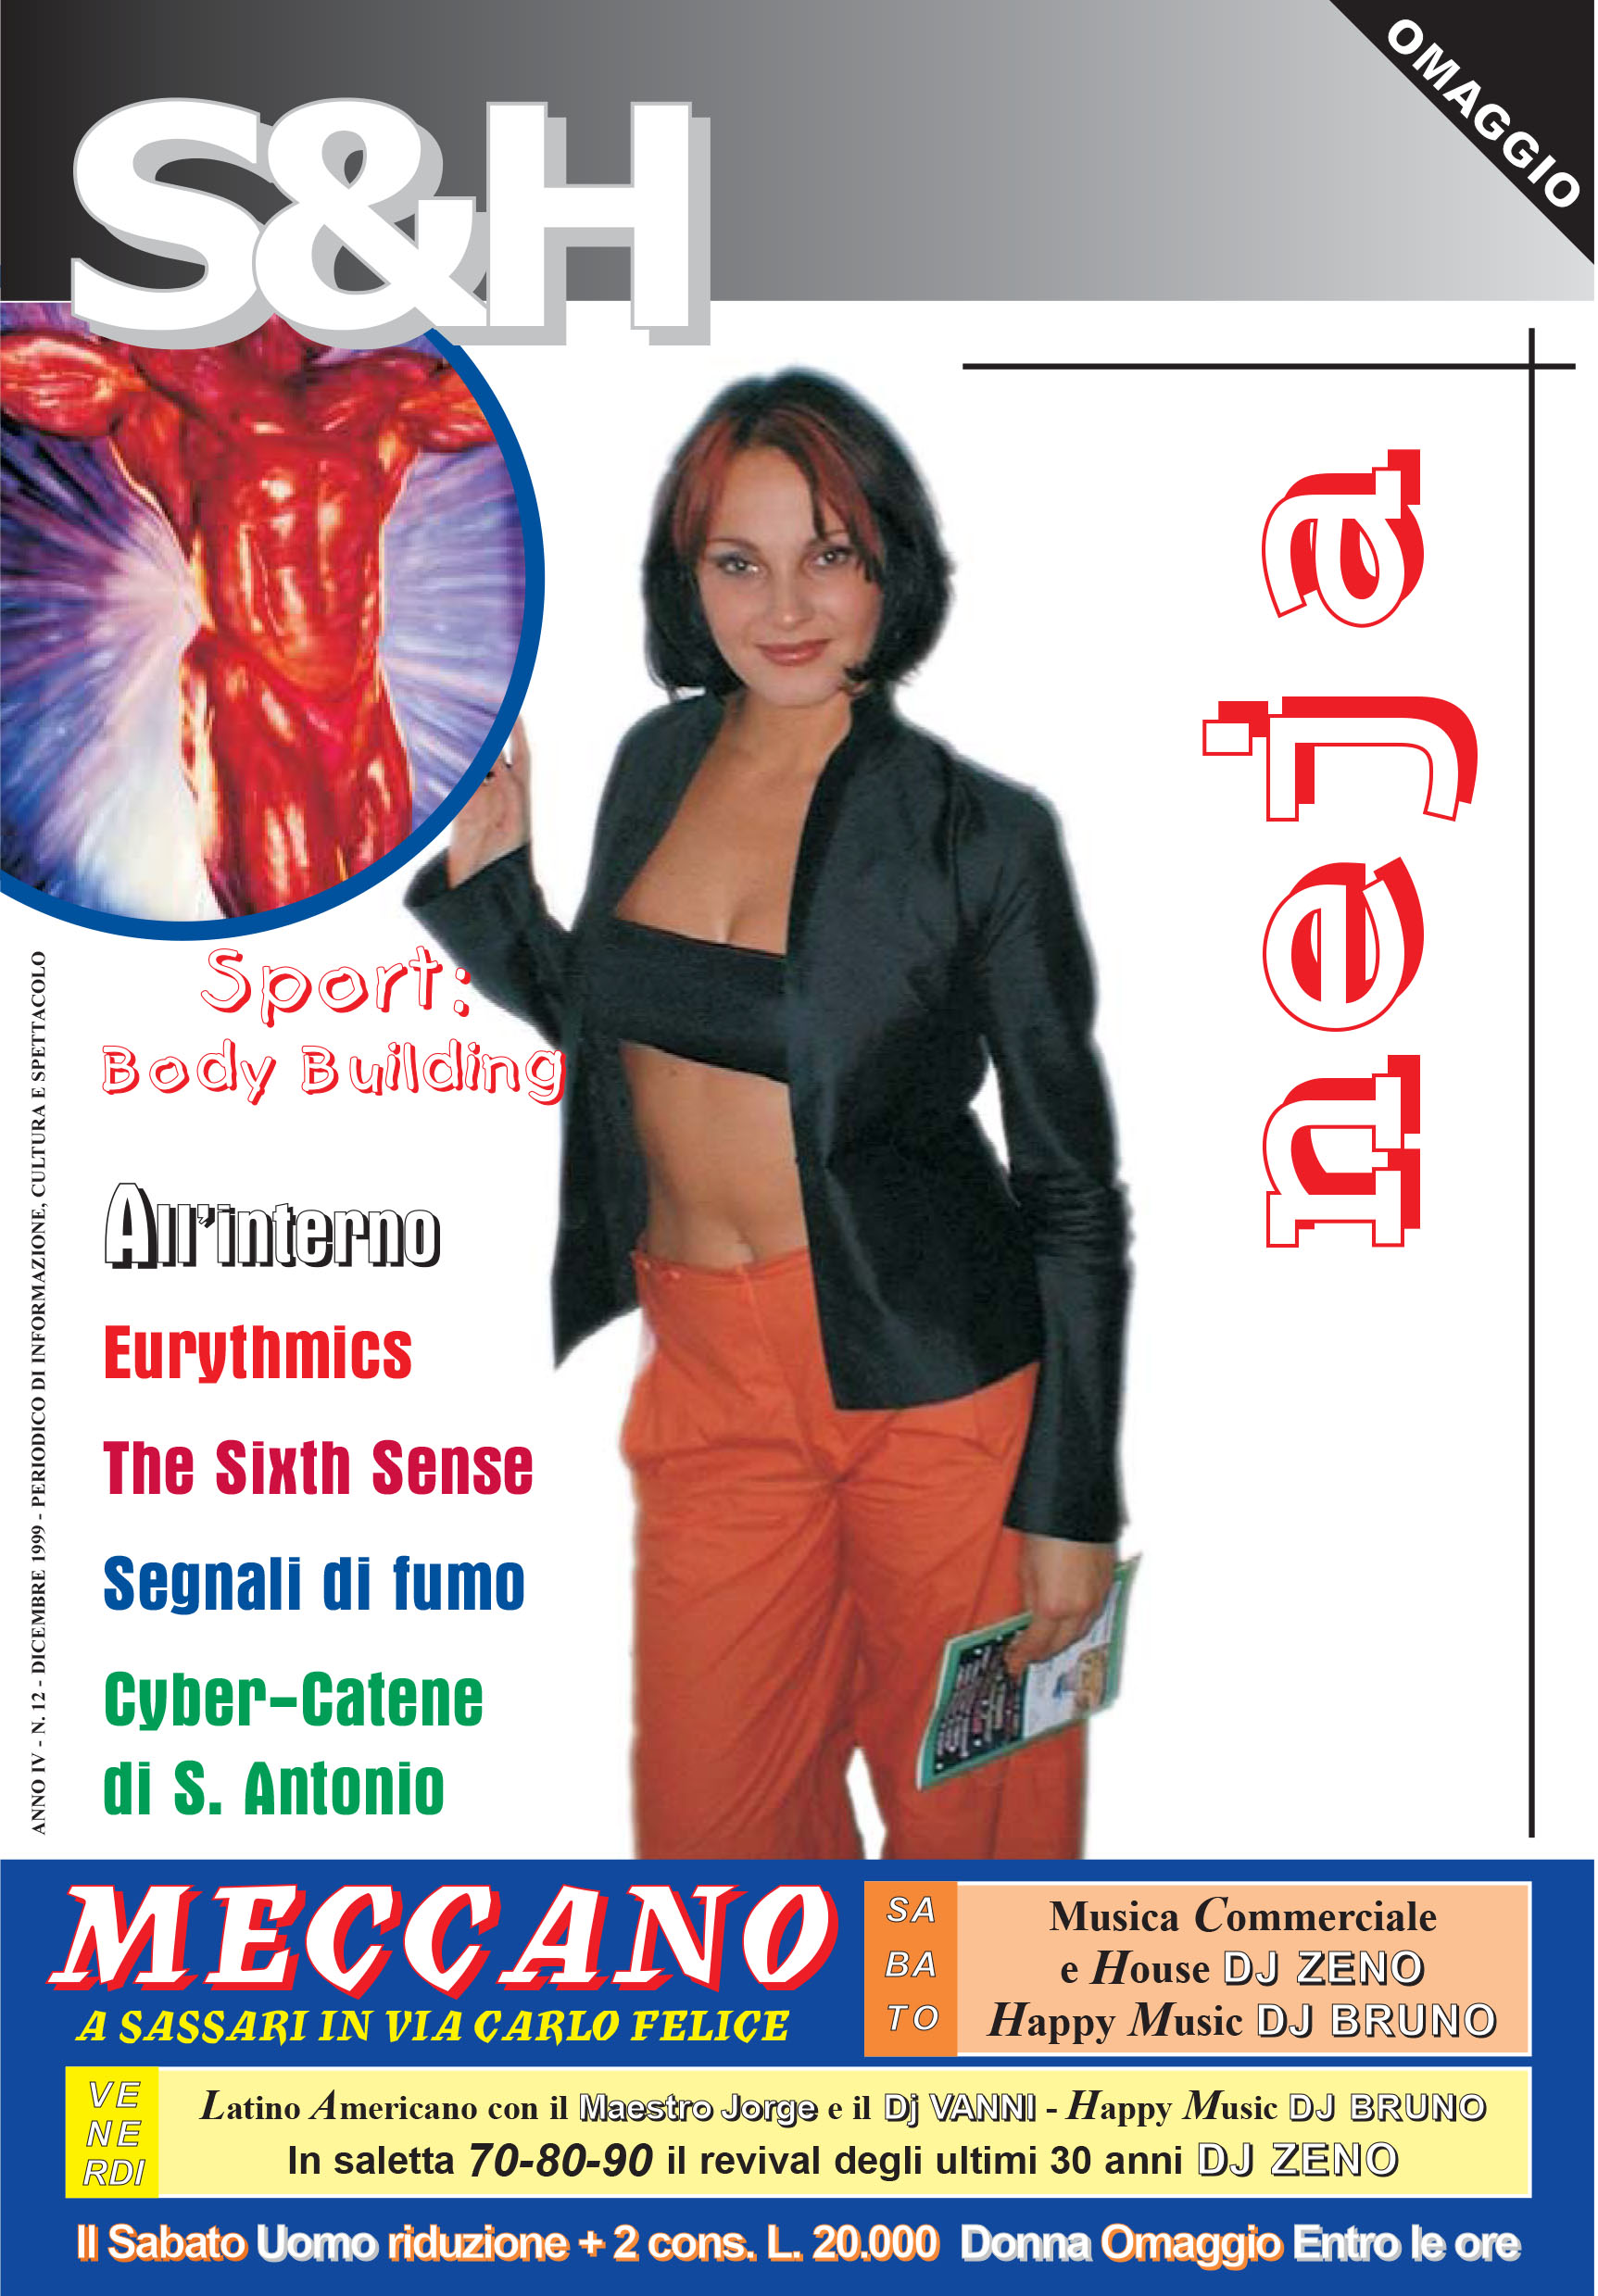 Neja protagonista della copertina di S&H, nel dicembre del 1999